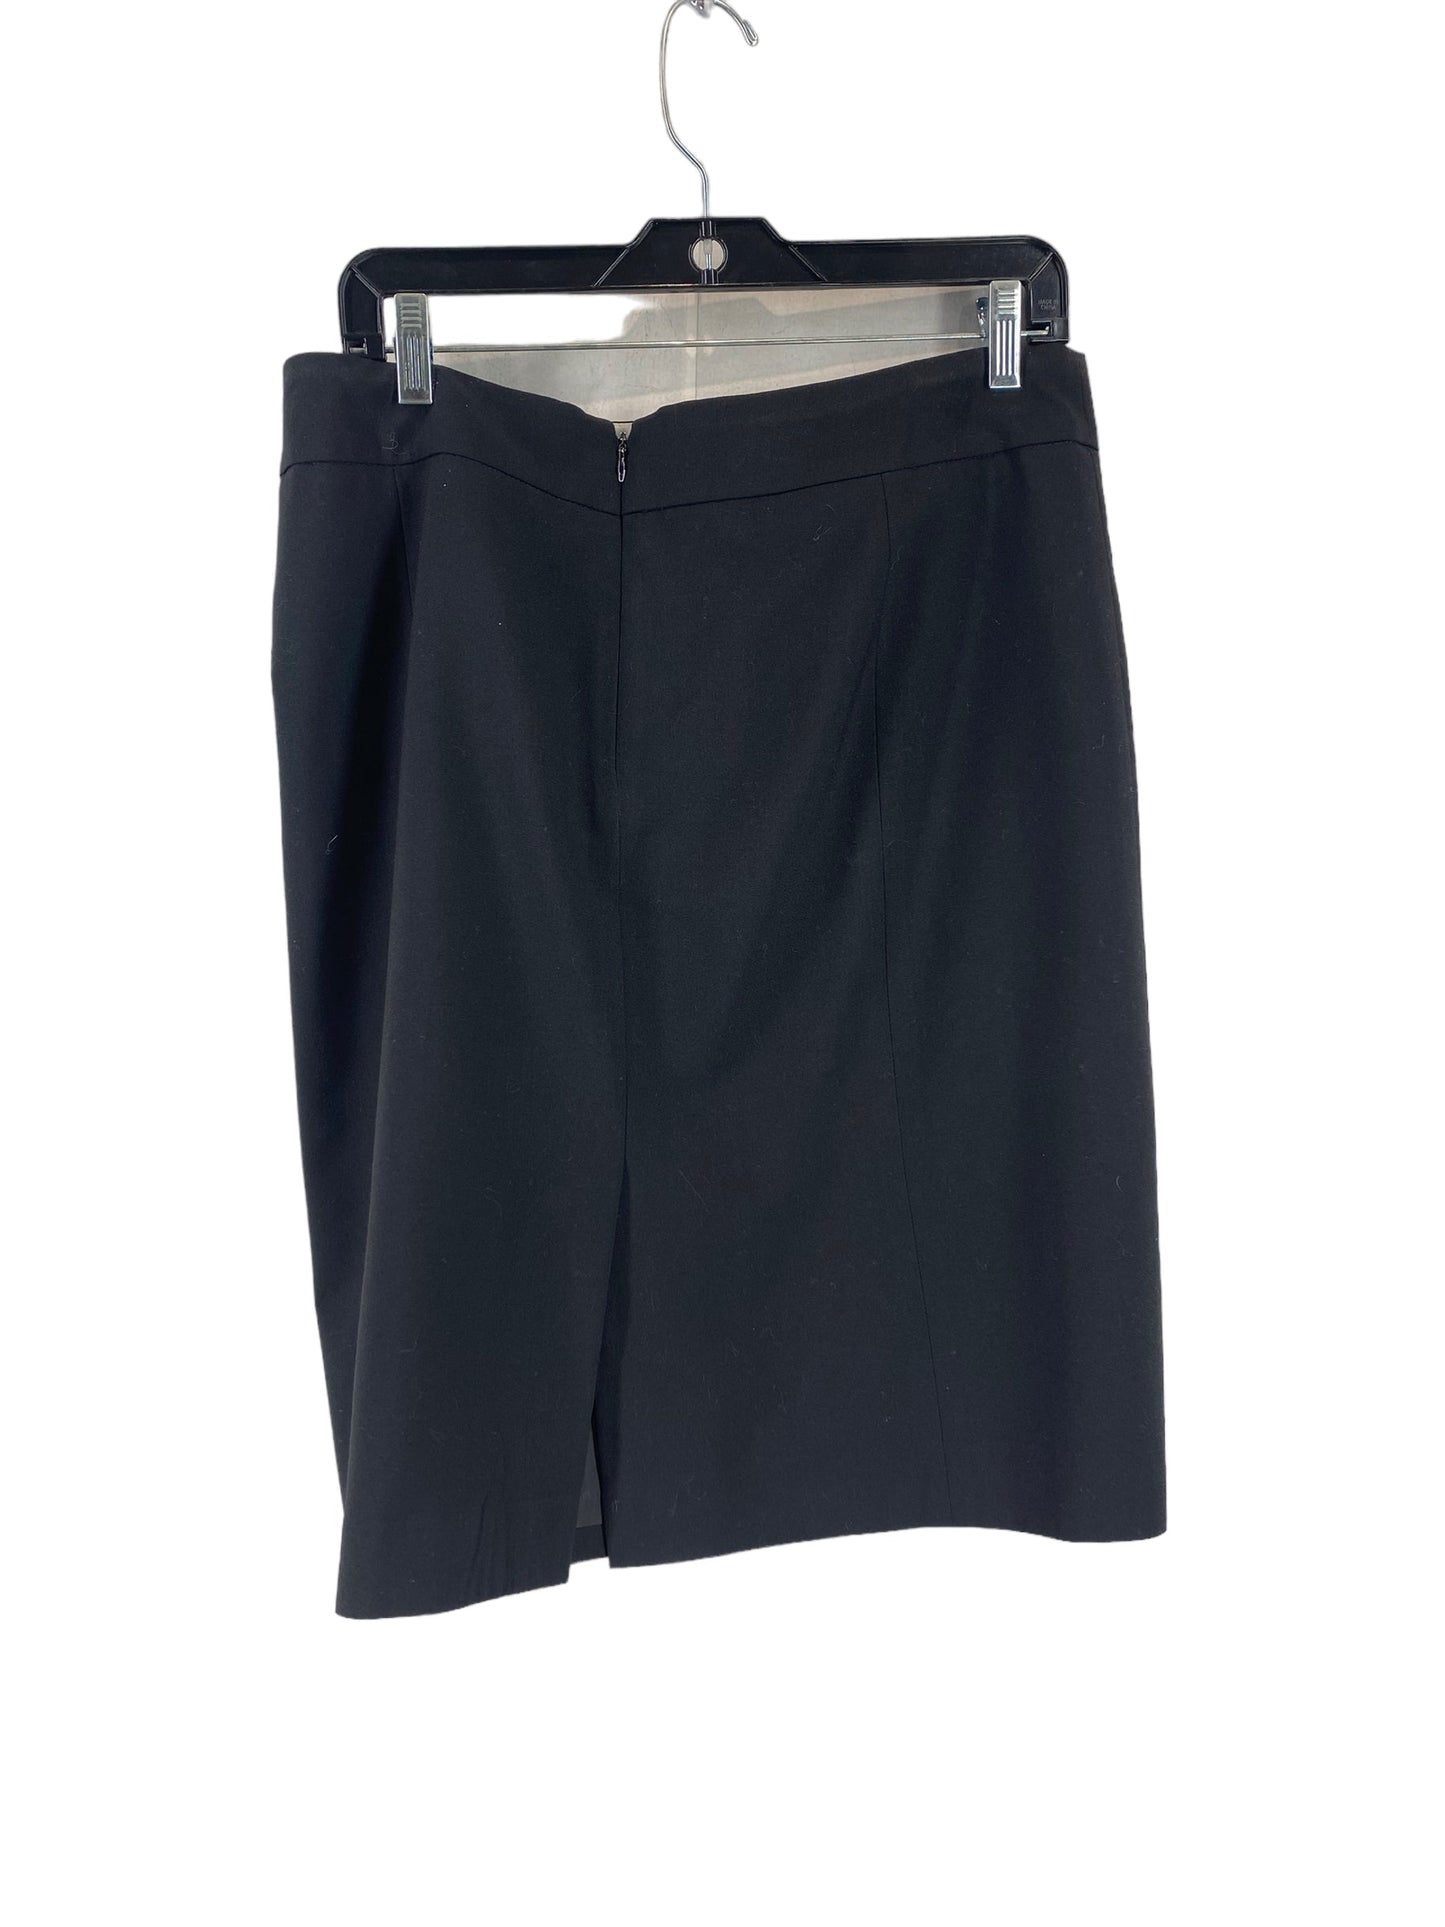 Skirt Midi By Anne Klein  Size: 12